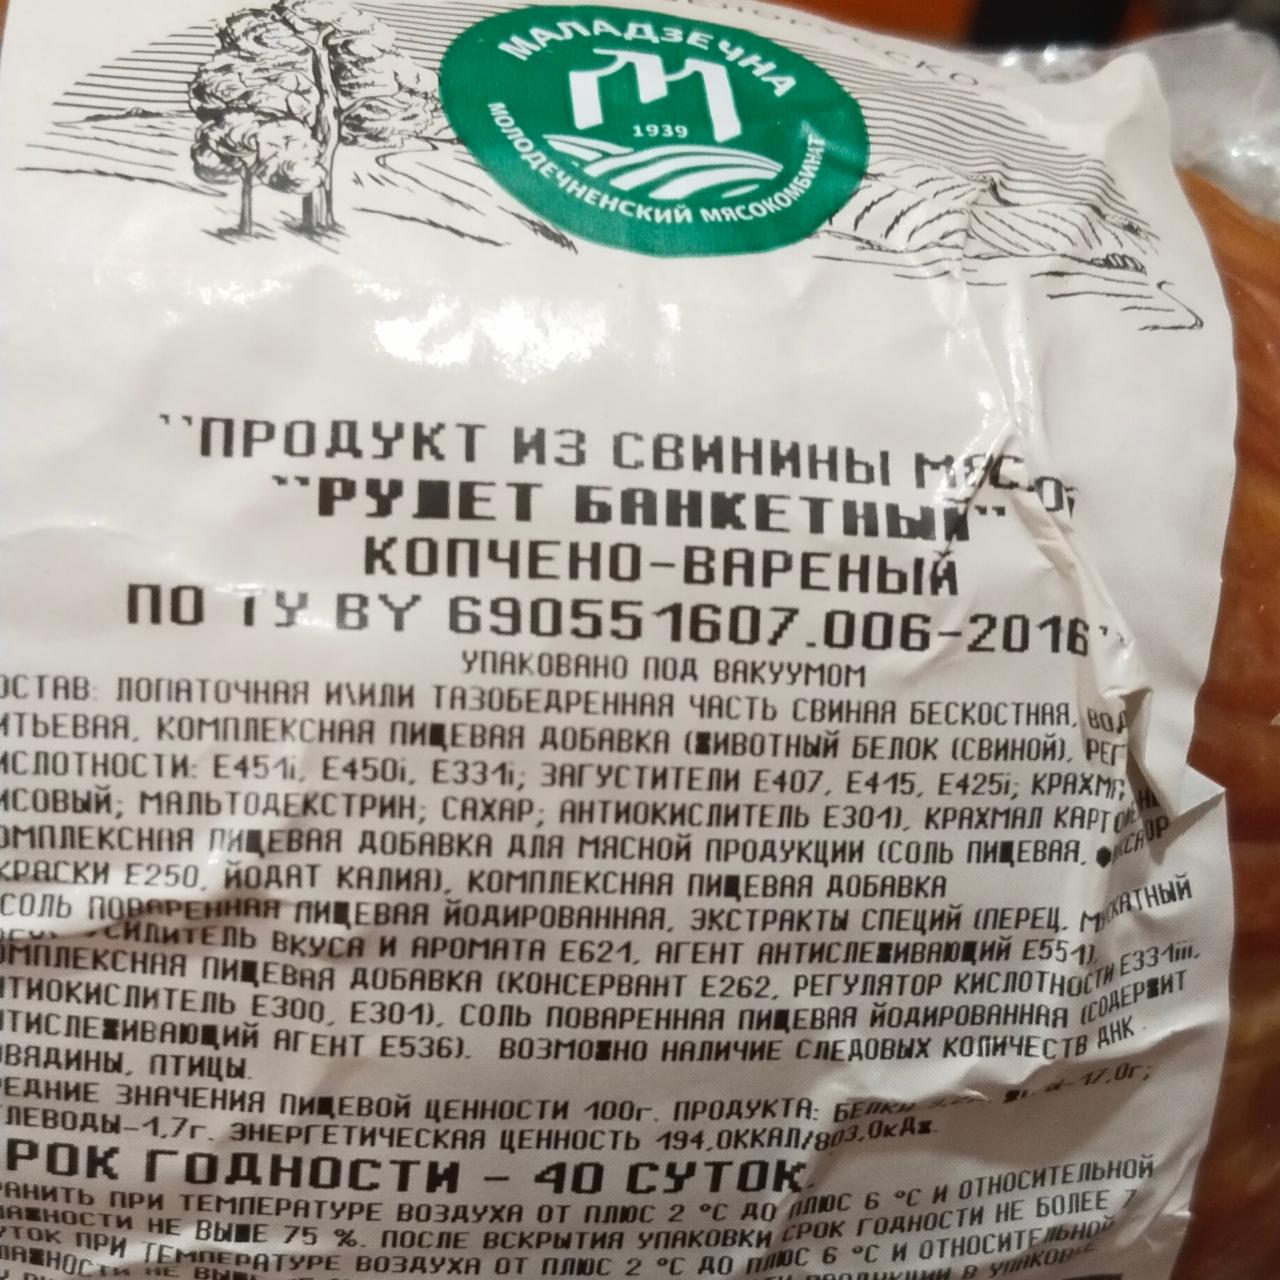 Фото - Продукт из свинины мясной рулет банкетный Маладзечна